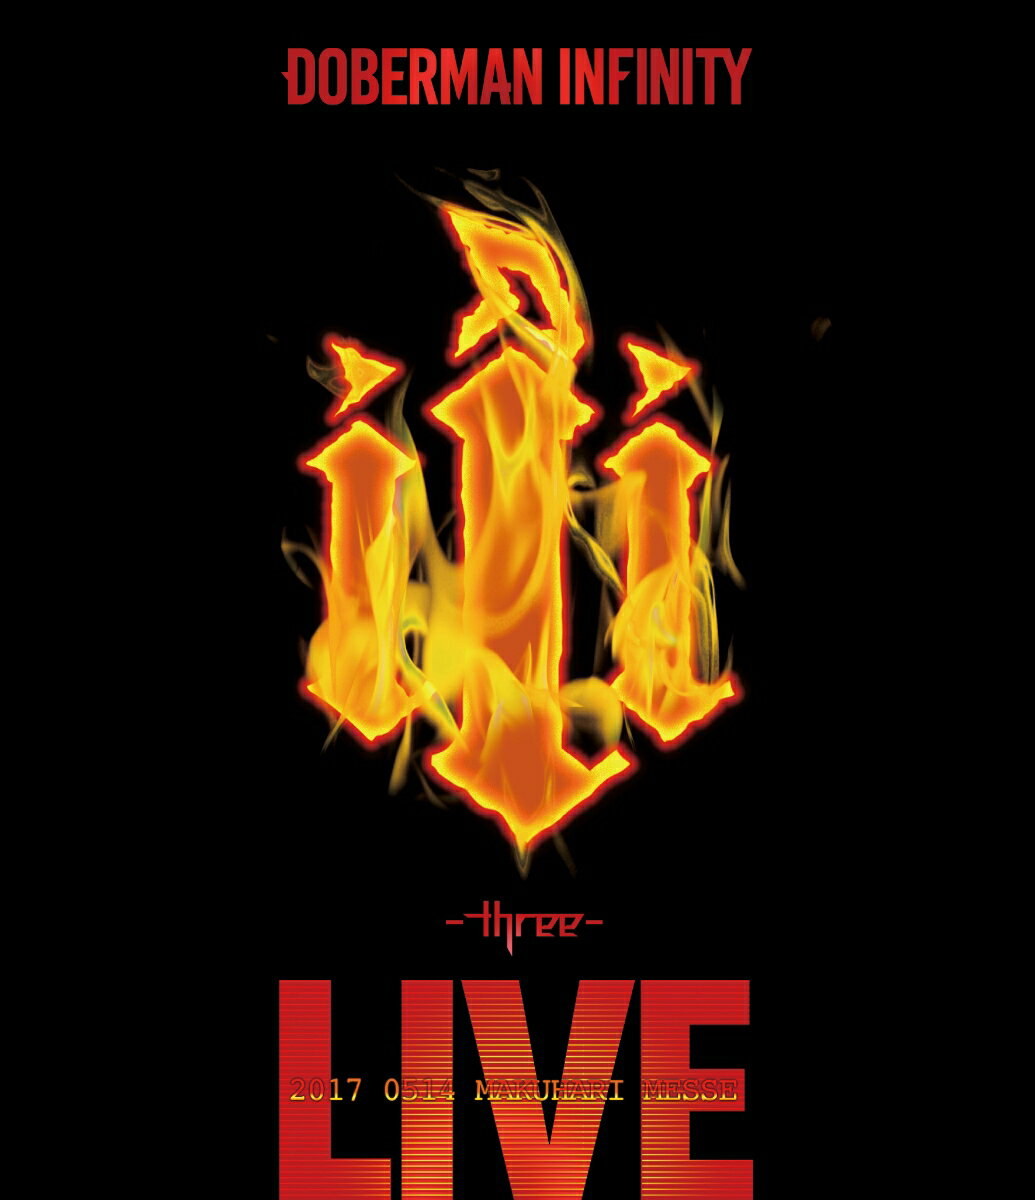 DOBERMAN INFINITY 3周年特別記念公演「iii 〜three〜」(スマプラ対応)【Blu-ray】